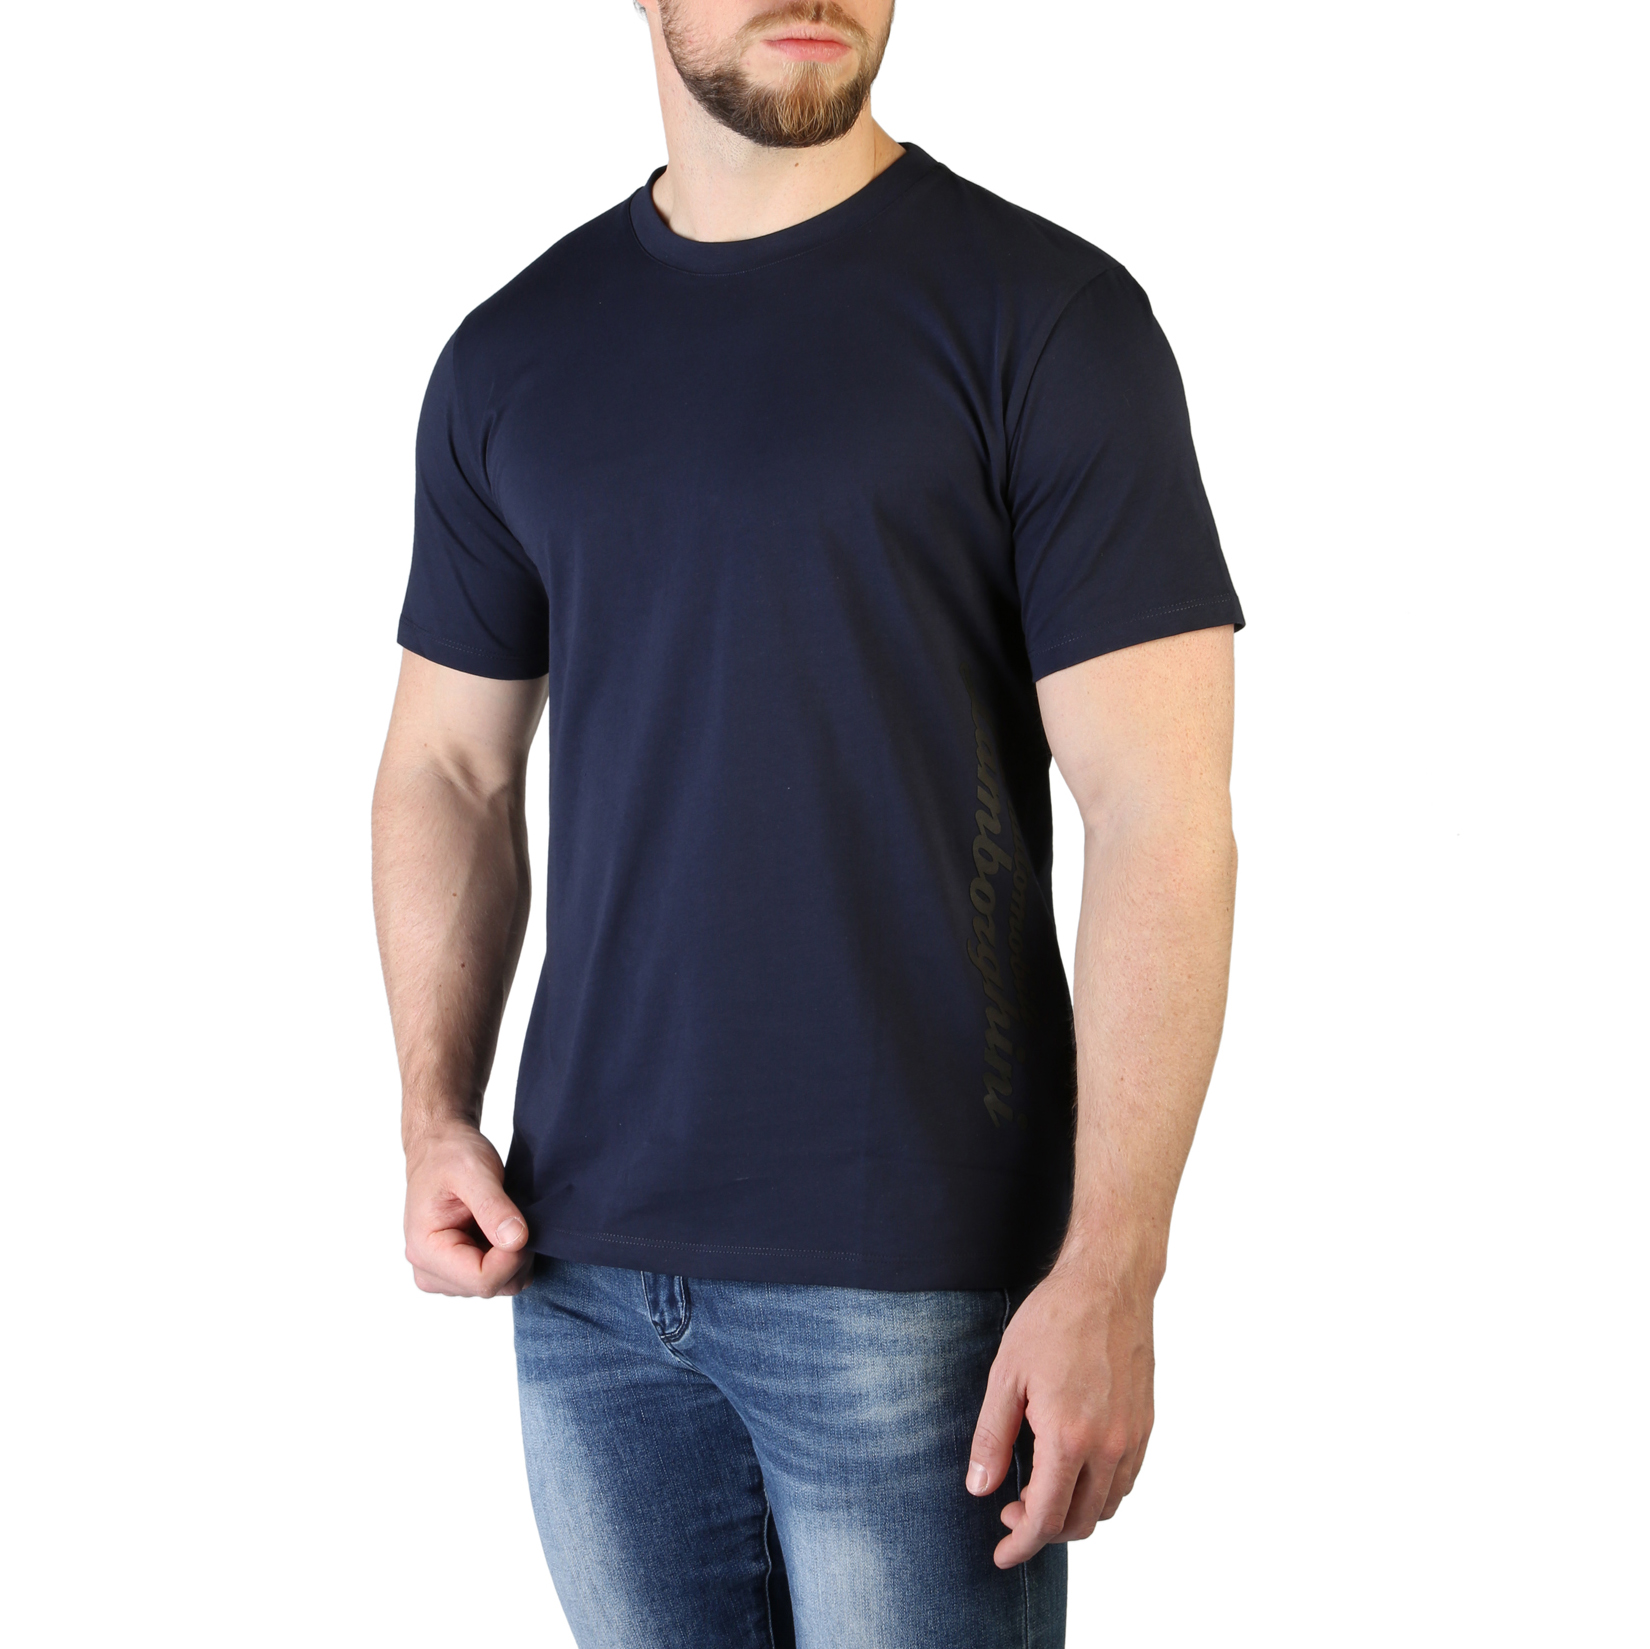 Lamborghini Blue T-shirts for Men - B3XVB7B5